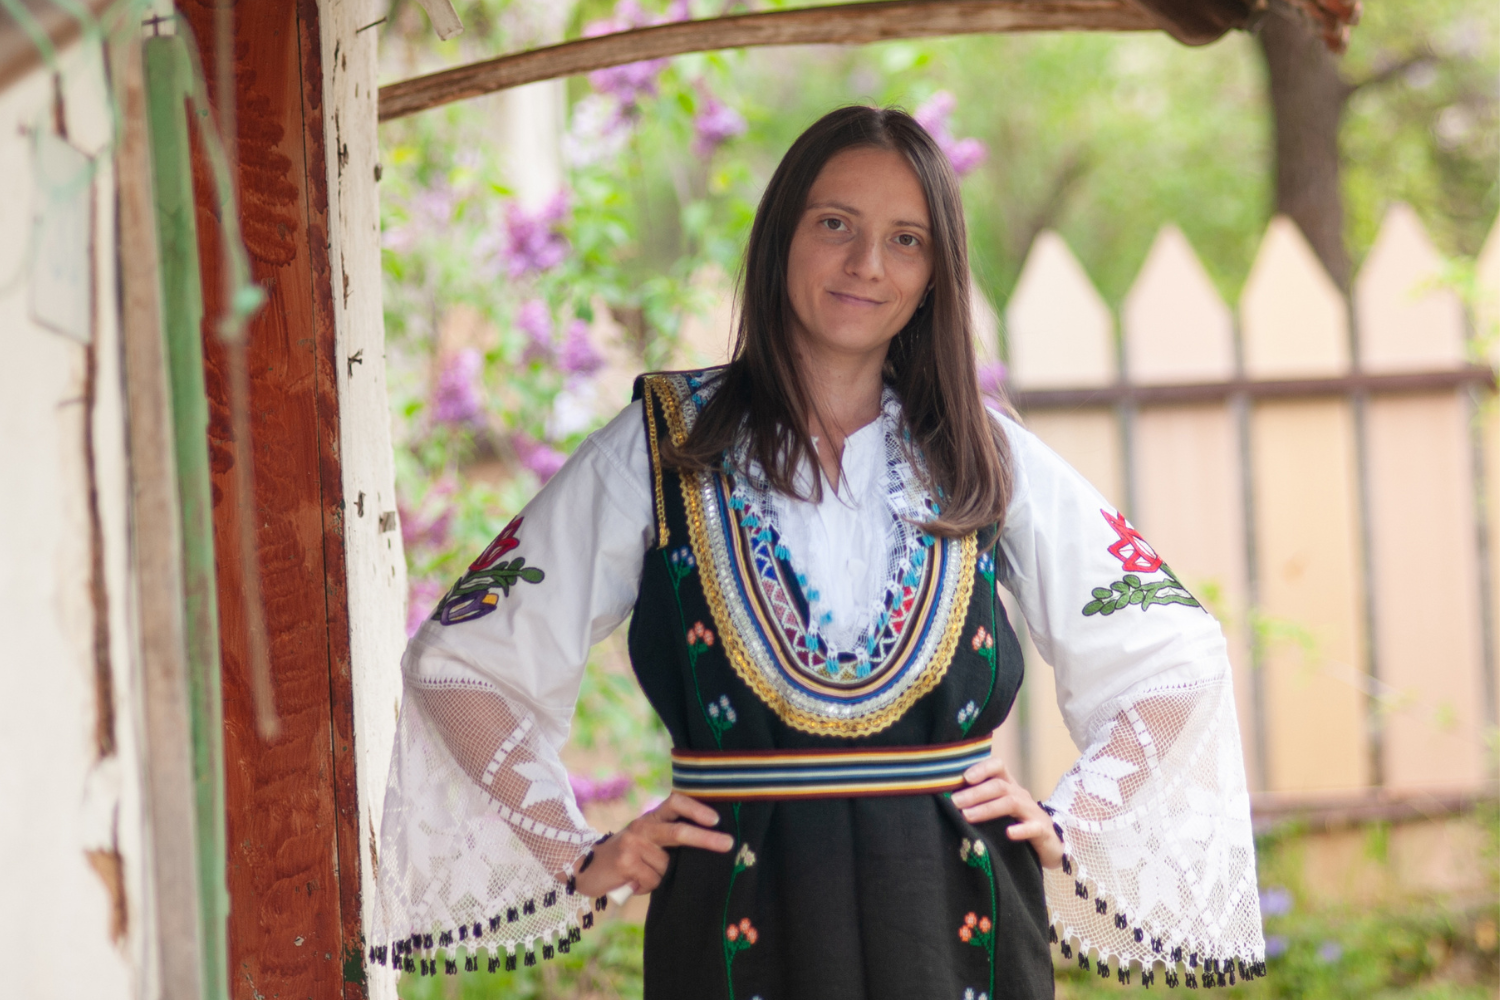 Traditionele kleding uit de Balkan gedragen door vrouw